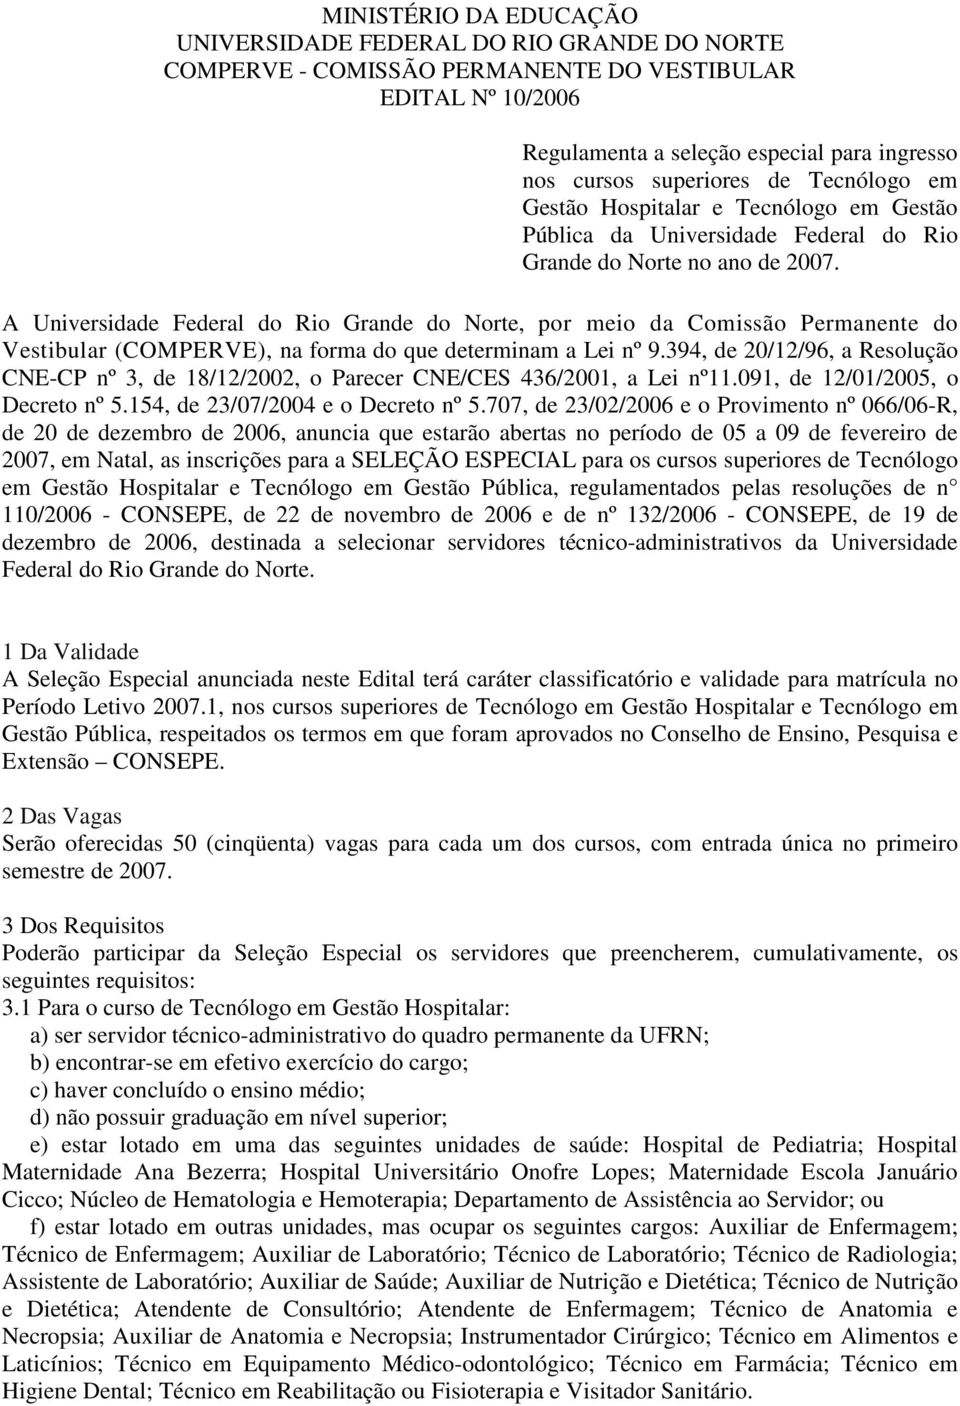 A Universidade Federal do Rio Grande do Norte, por meio da Comissão Permanente do Vestibular (COMPERVE), na forma do que determinam a Lei nº 9.